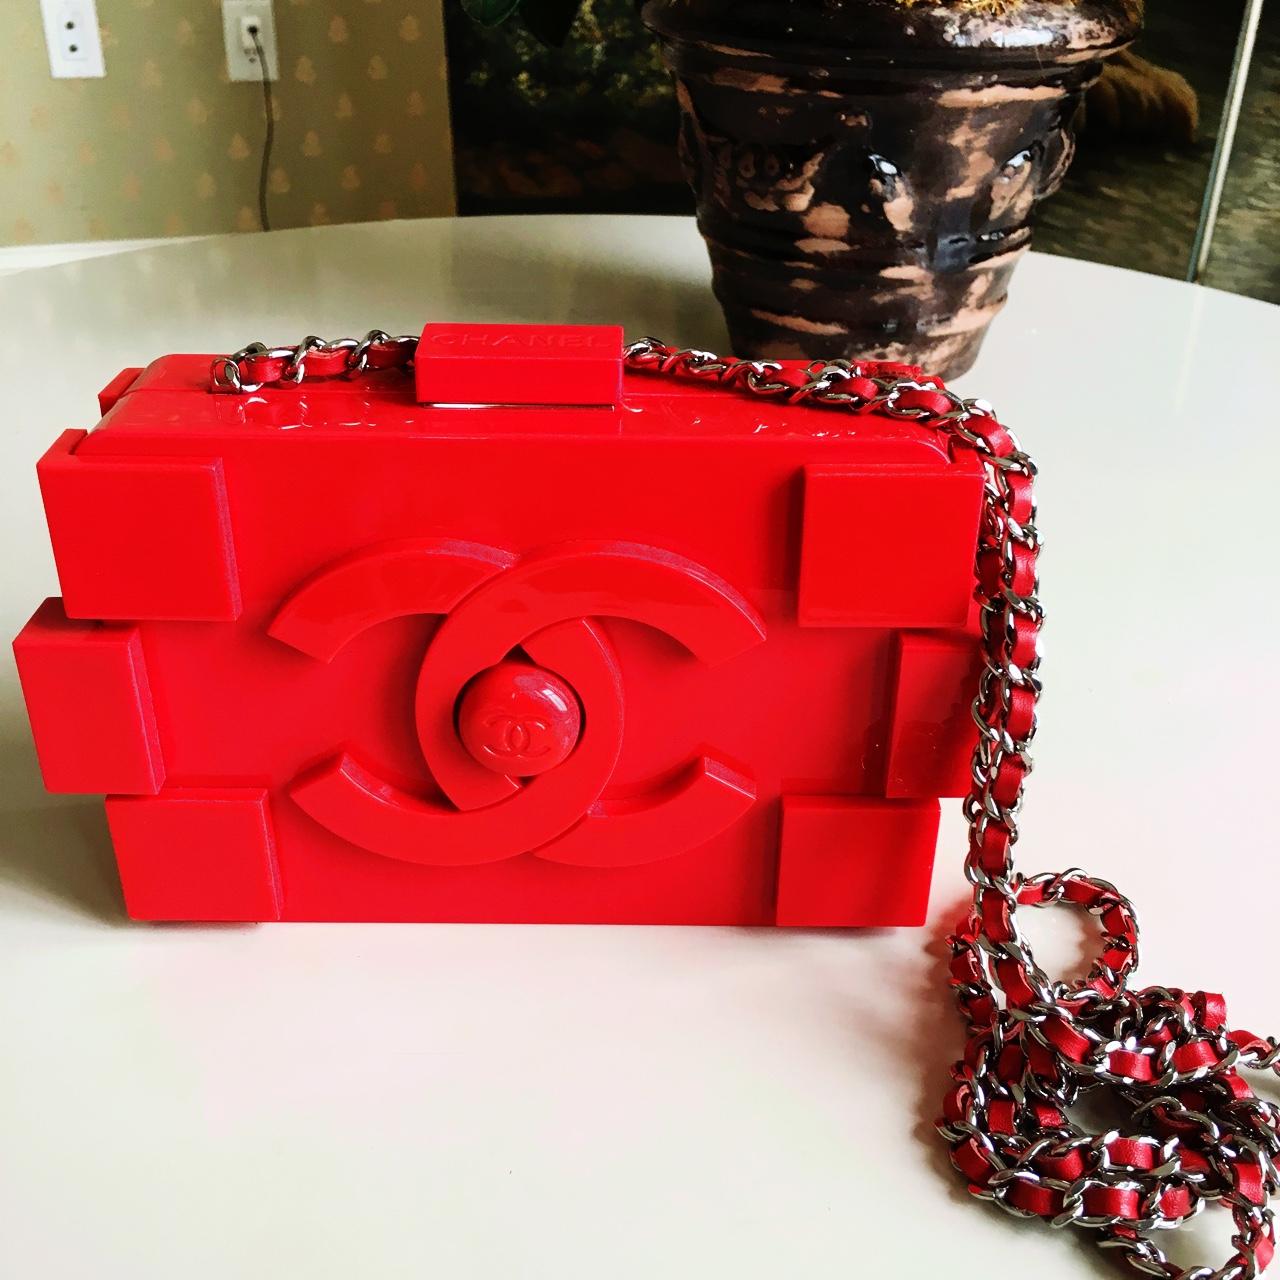 Pin by War*rior on Lego My Ego  Chanel bag, Chanel handbags, Bags